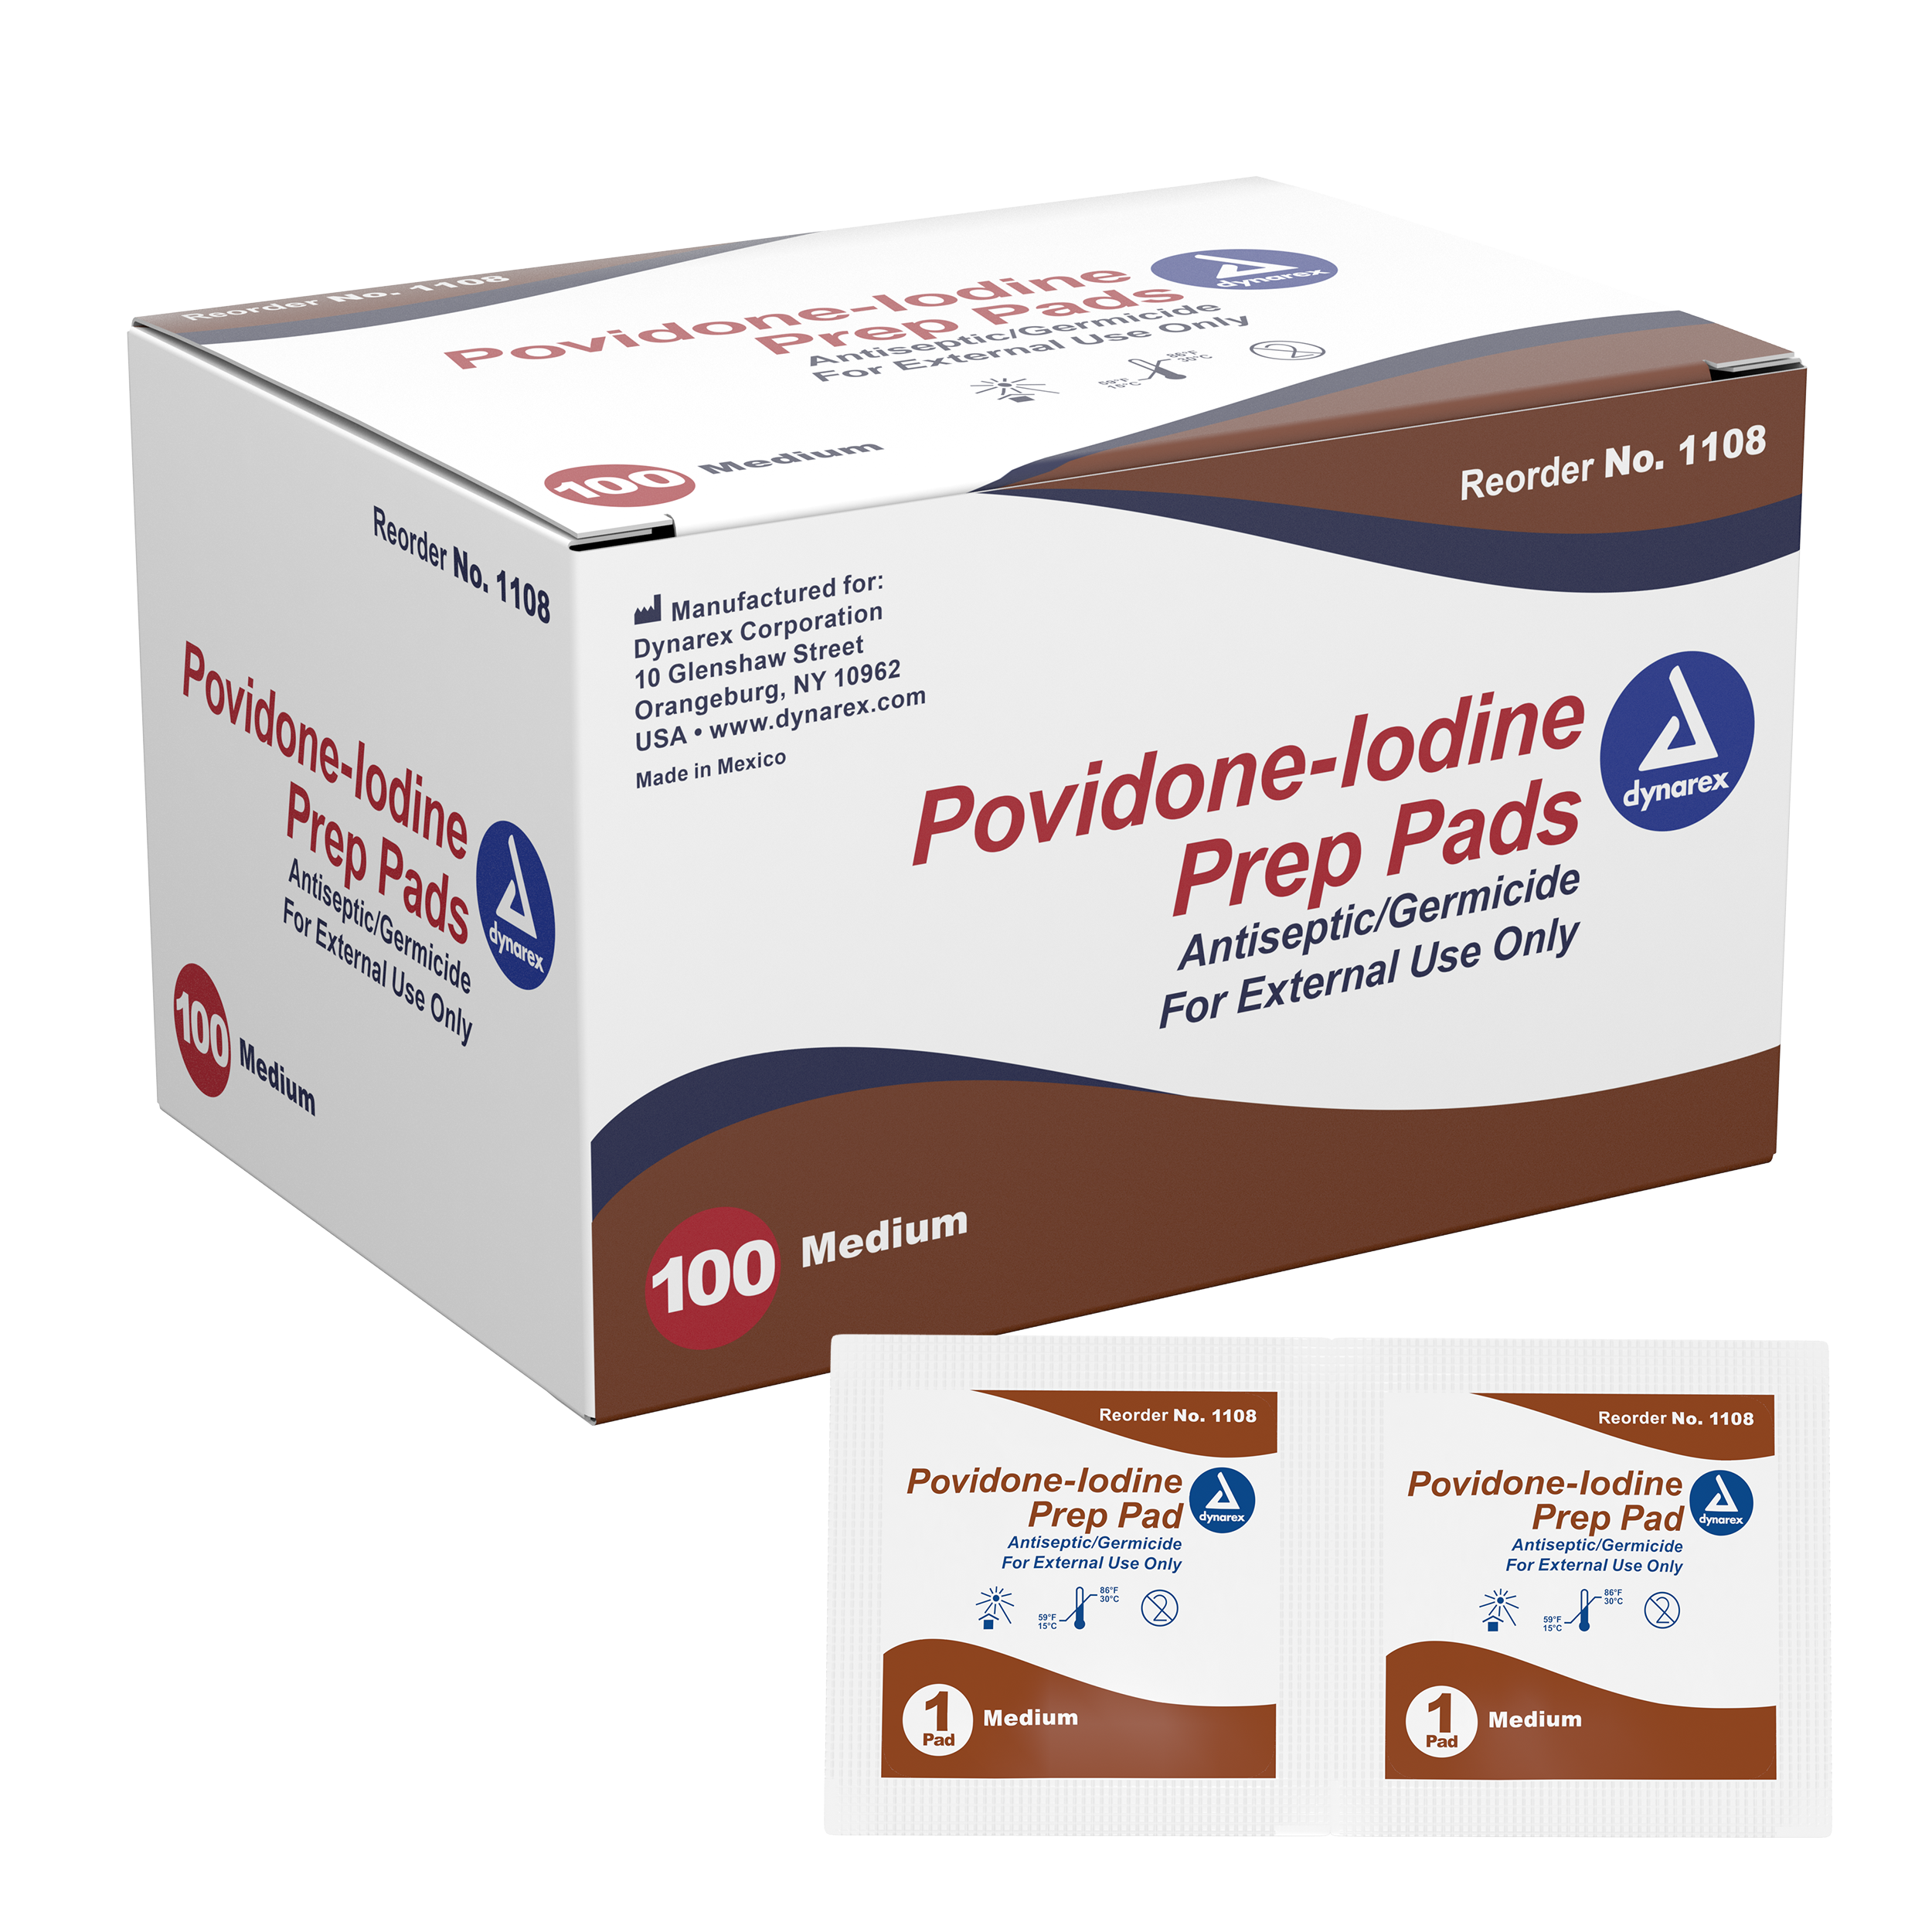 1108-Povidone-Iodine-Prep-Pads-main